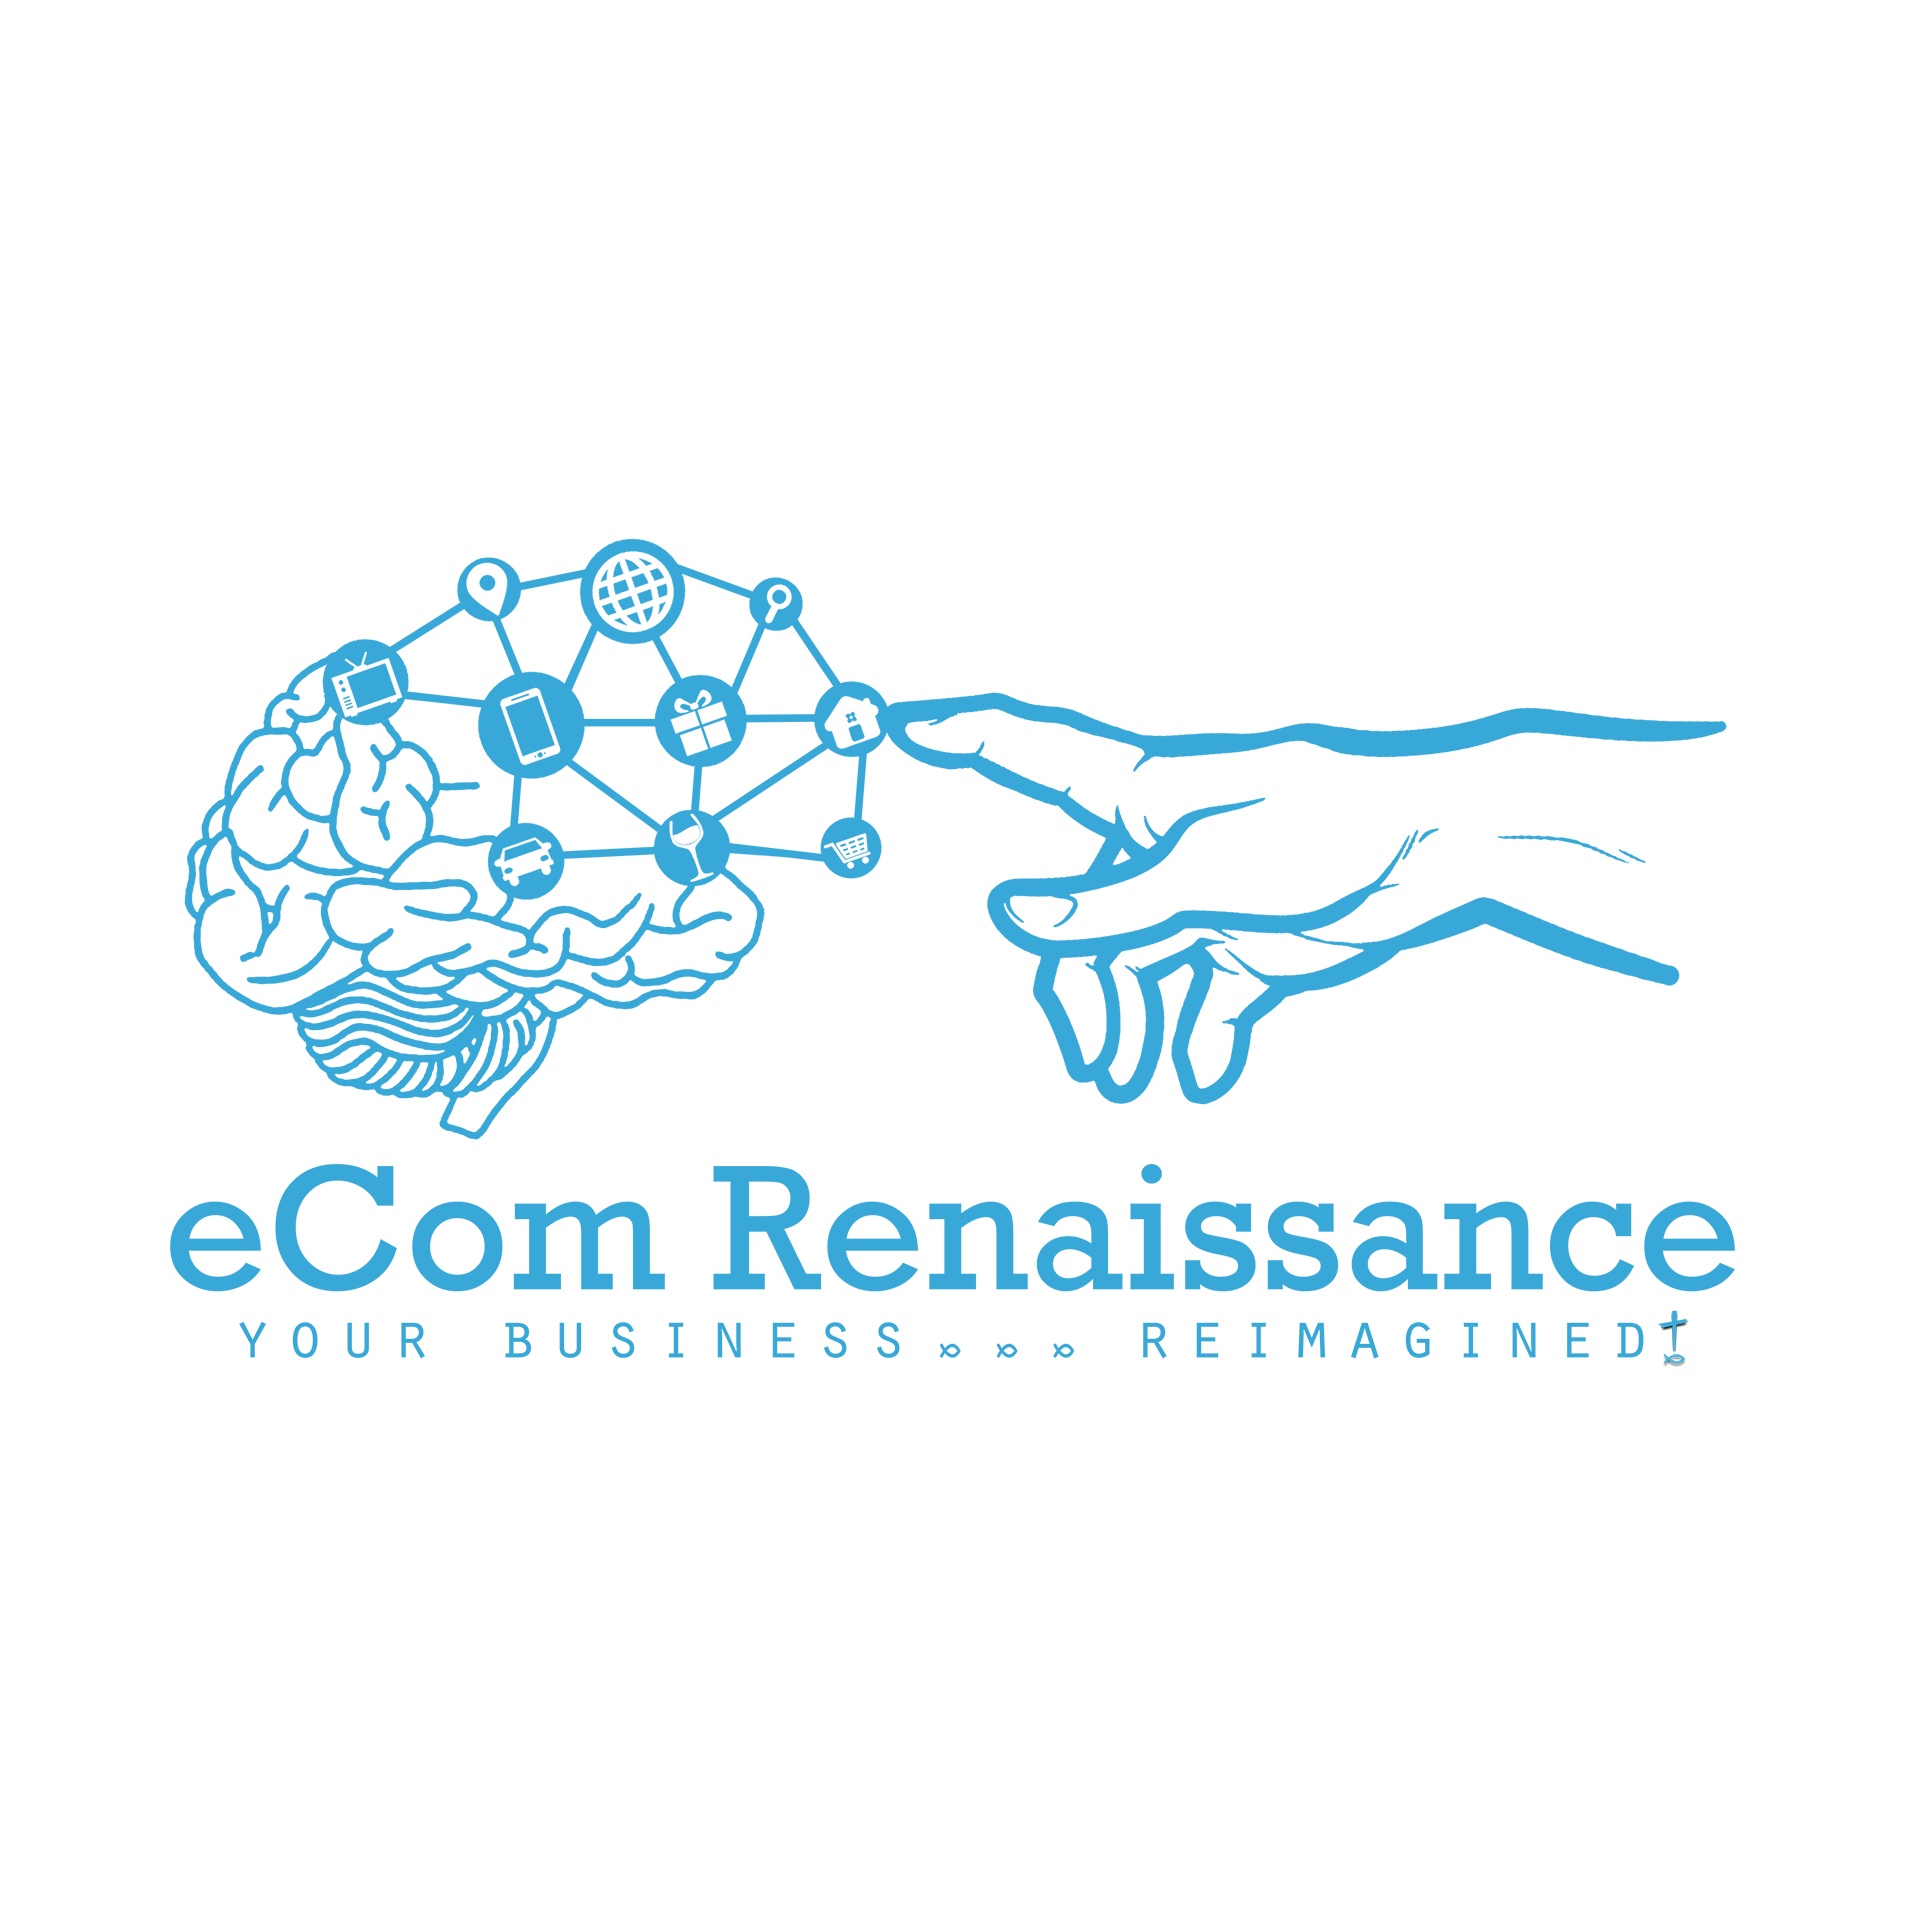 Ecom Renaissance Logo